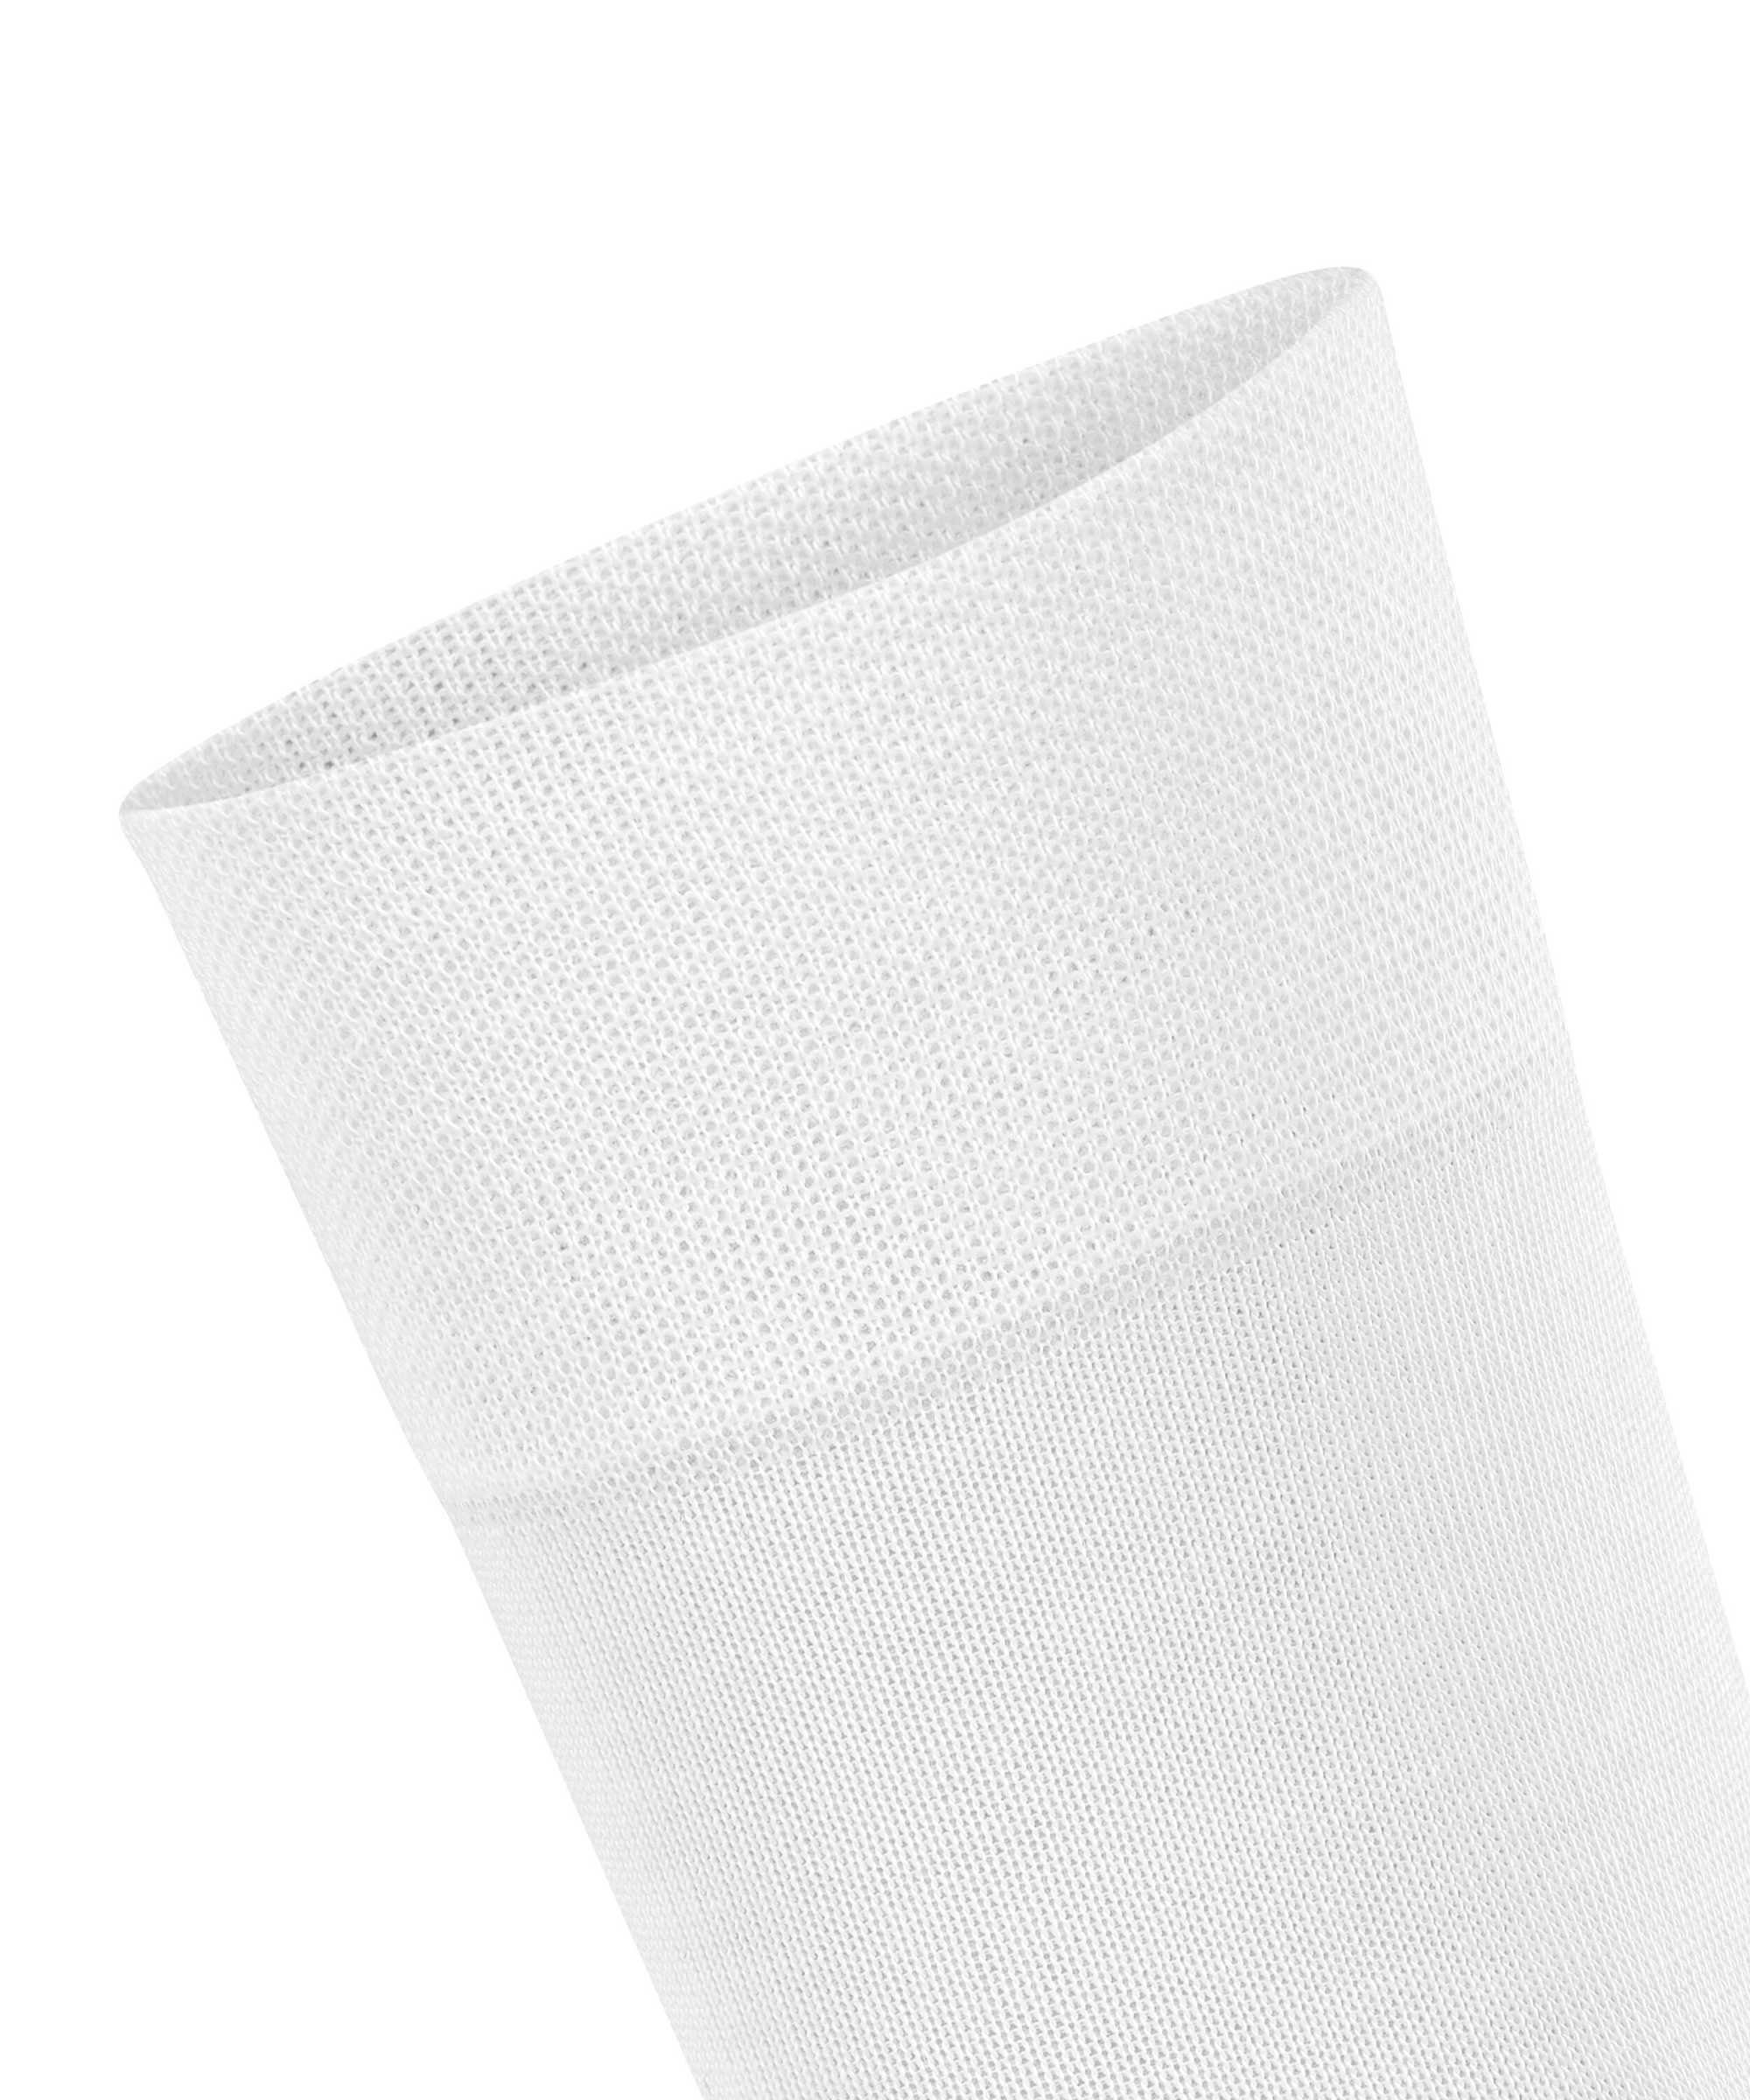 FALKE Kurzsocken New Sensitive - Bündchen, Logo York, Damen Weiß Socken